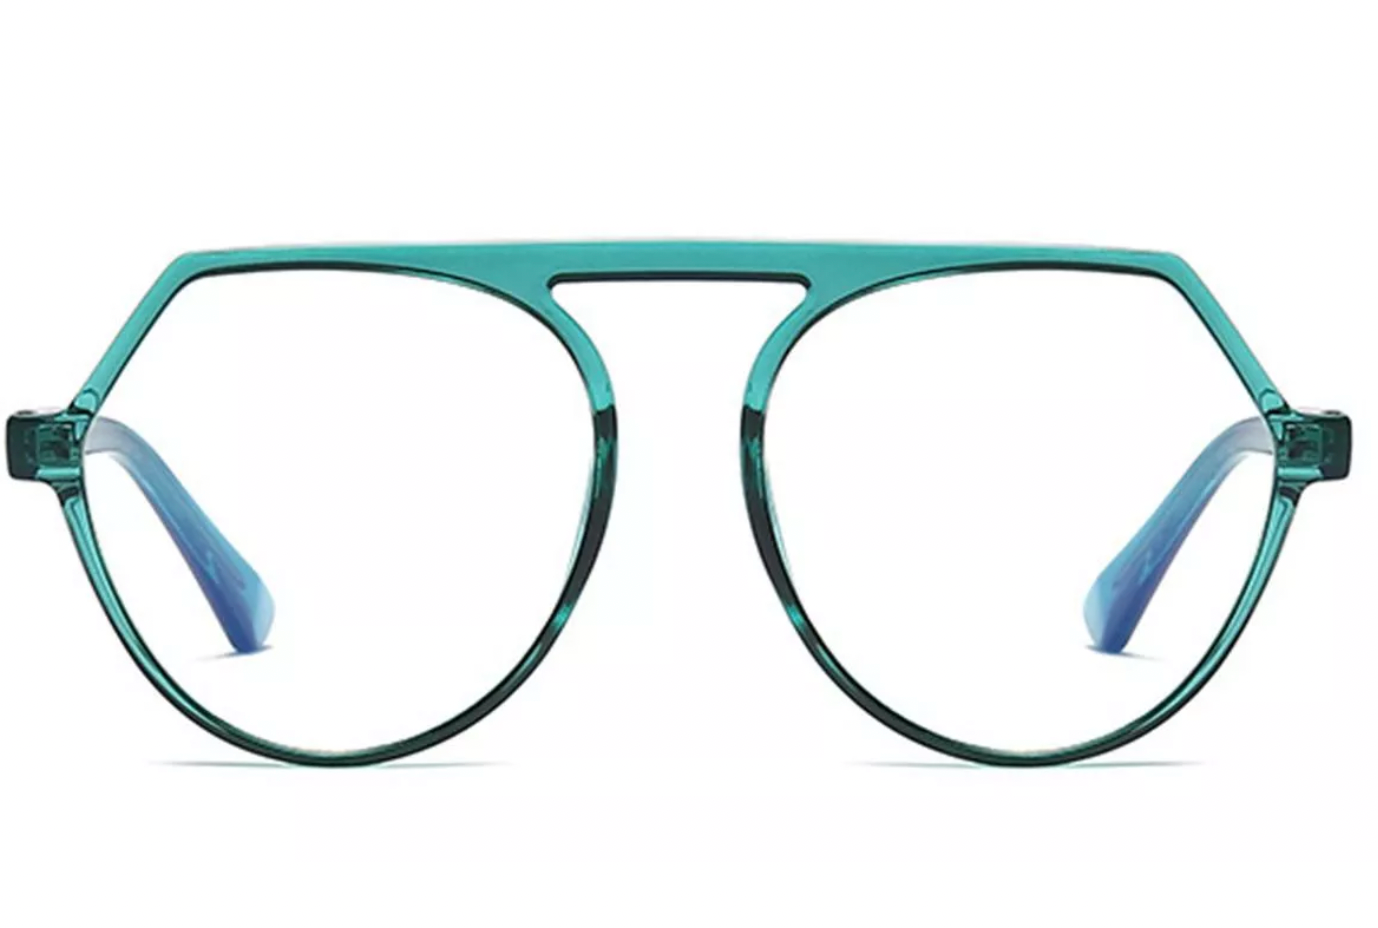 Tanner (turquoise)         Blue Light Glasses